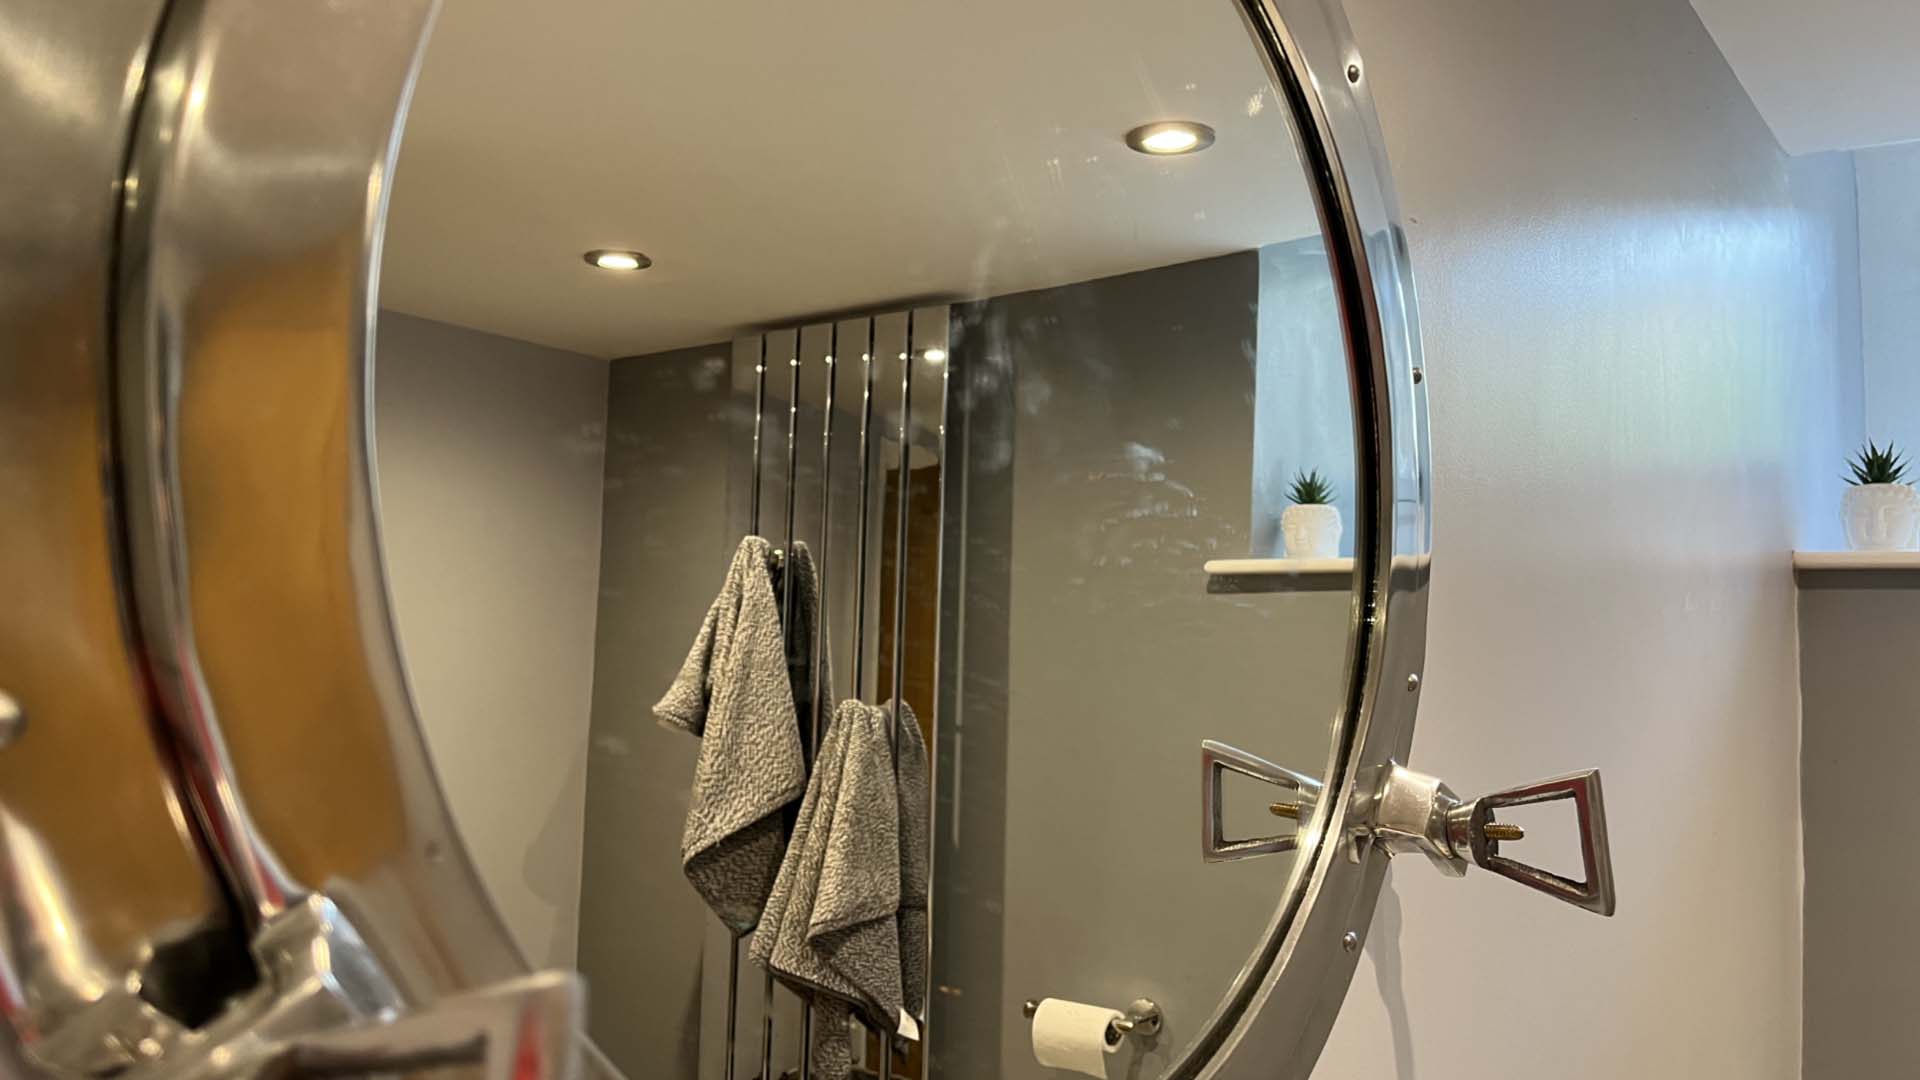 A mirror that needs a clean in a bathroom